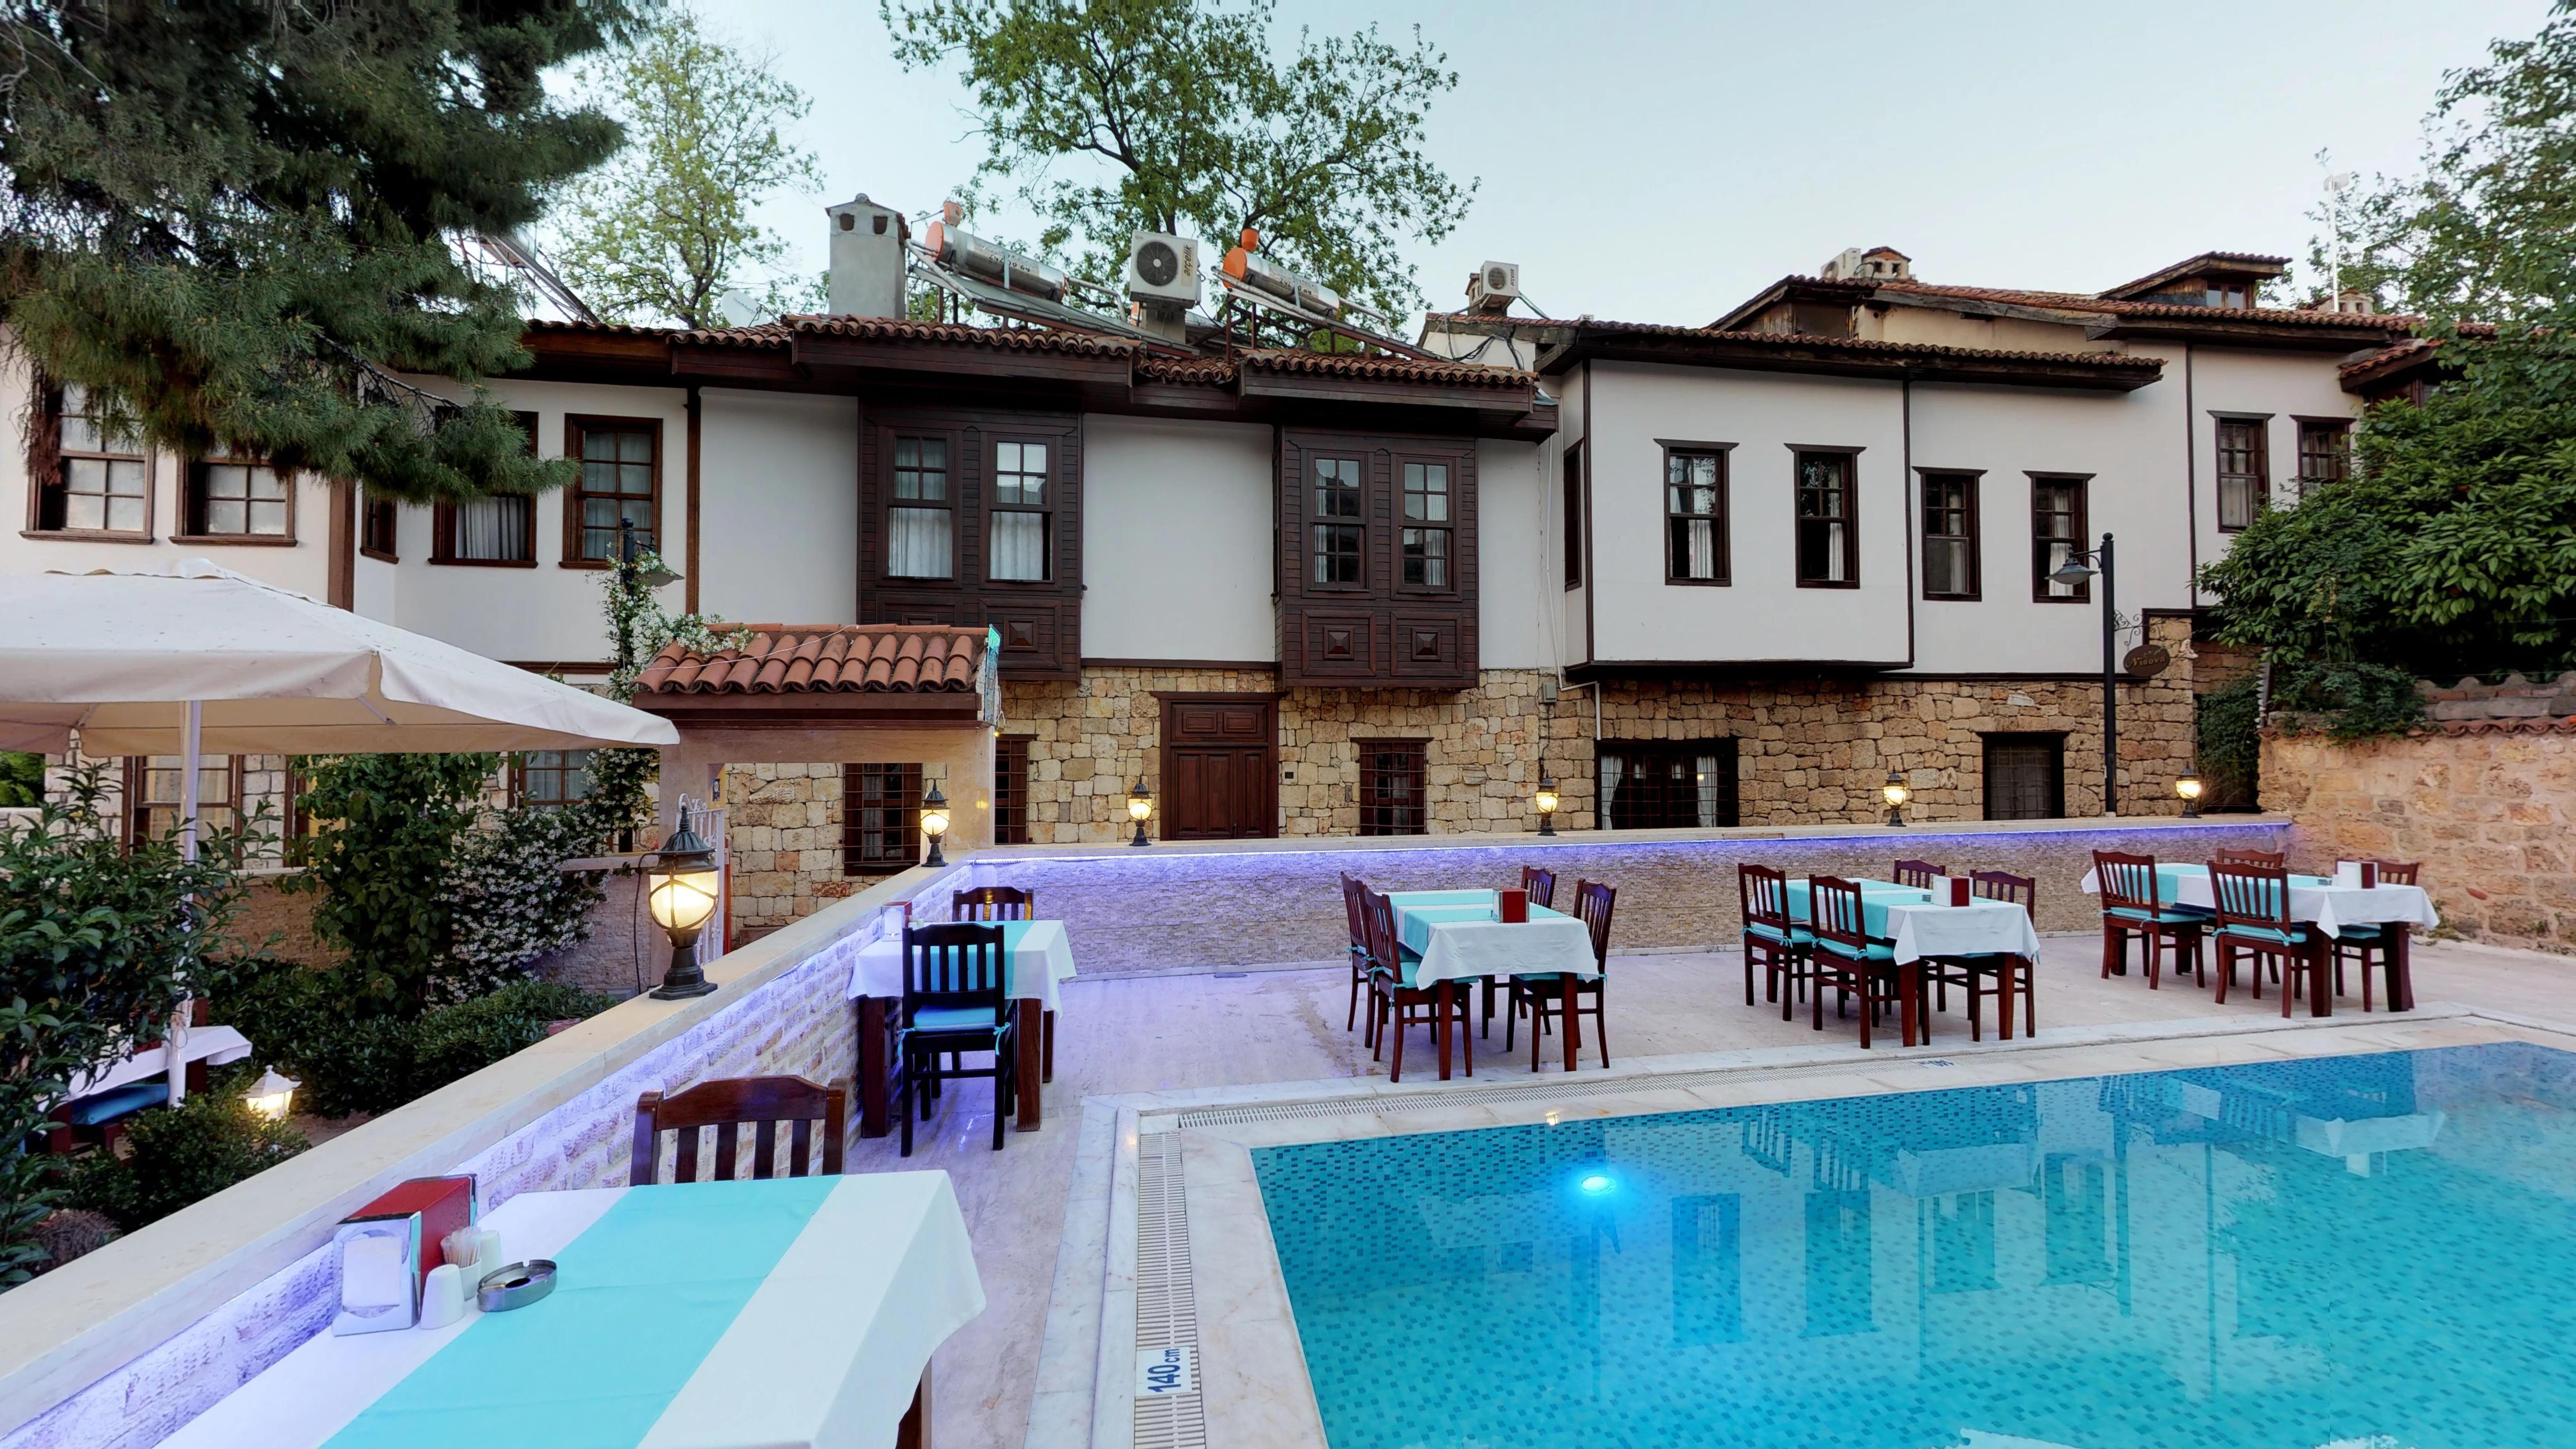 Urcu Hotel Antalya Bagian luar foto